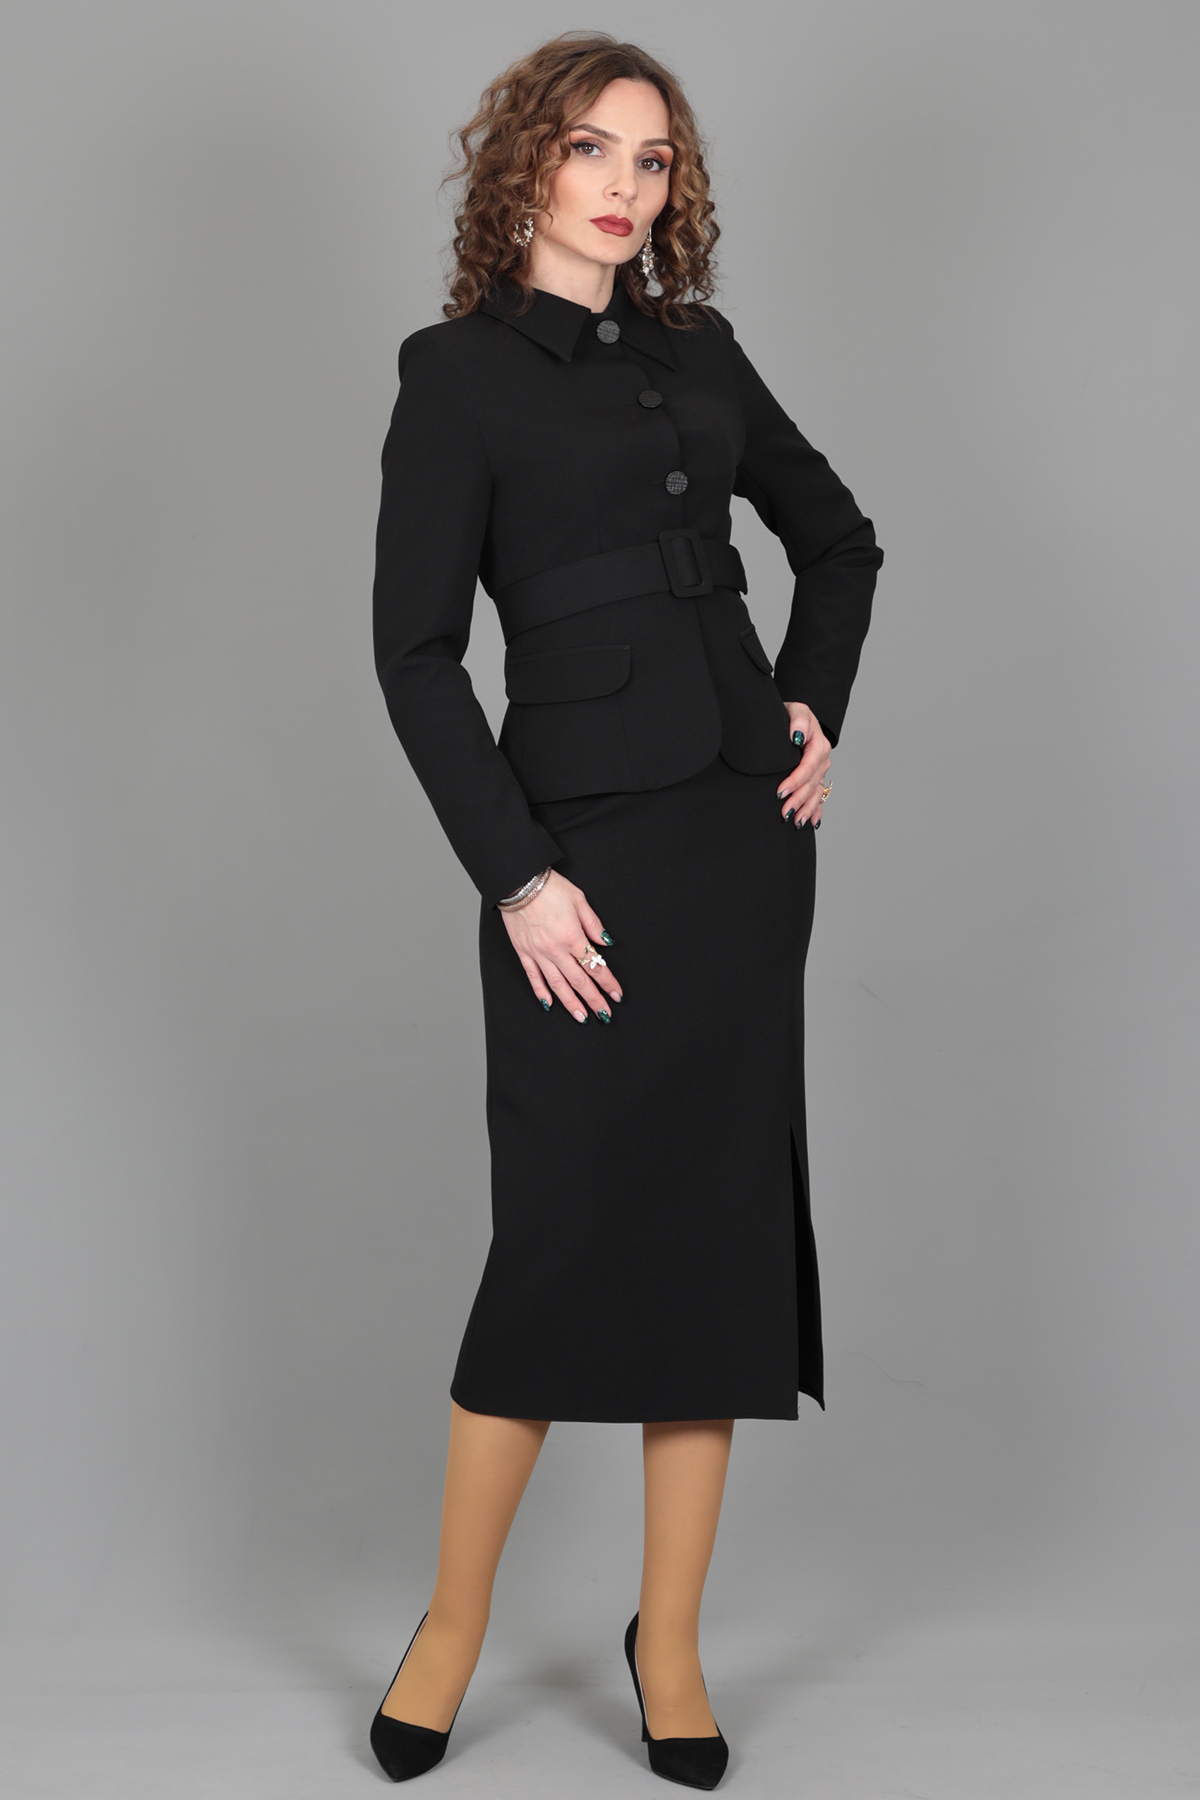 Peplum Ceket & Yırtmaçlı Uzun Etek Takım-Siyah - Önder Özsoy | Ofis Giyim |  Yeni Sezon